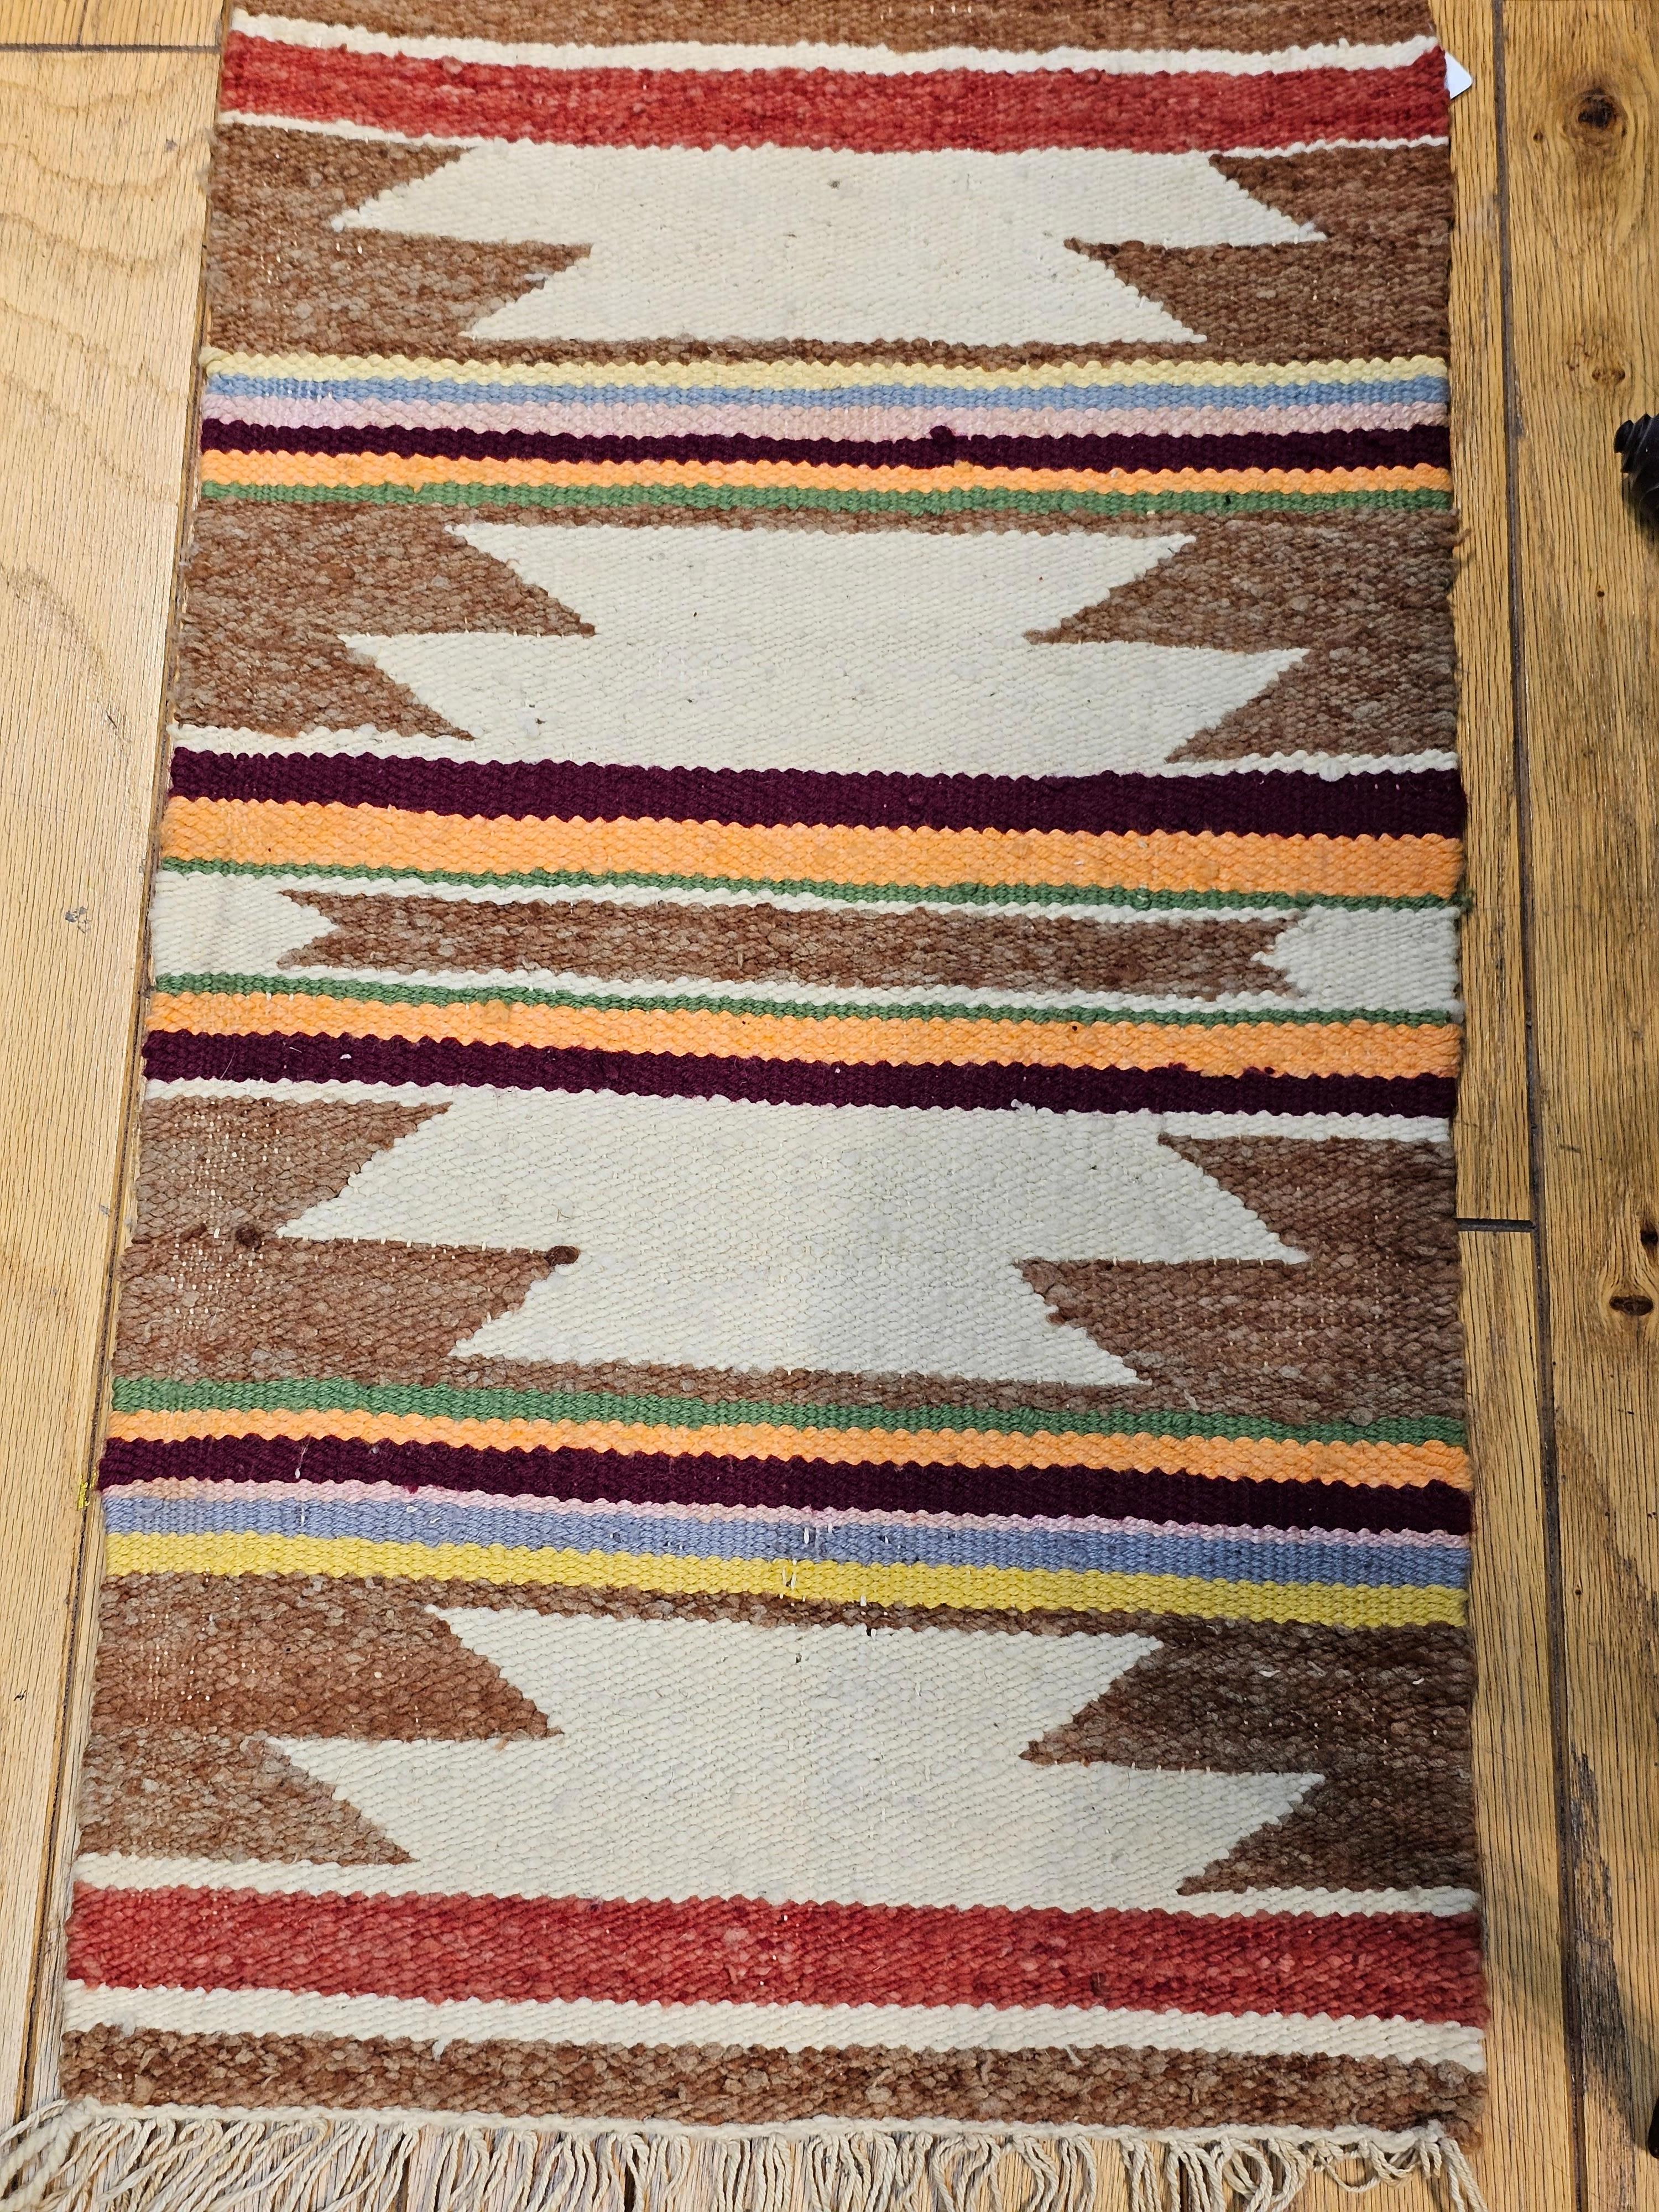 Tapis vintage Navajo d'Amérique du Nord à large bande ivoire, rouille, pourpre et jaune de la fin du XXème siècle.  Les tapis Navajo sont généralement tissés à plat avec de la laine pour le corps du tapis et généralement une base en coton. 
Les